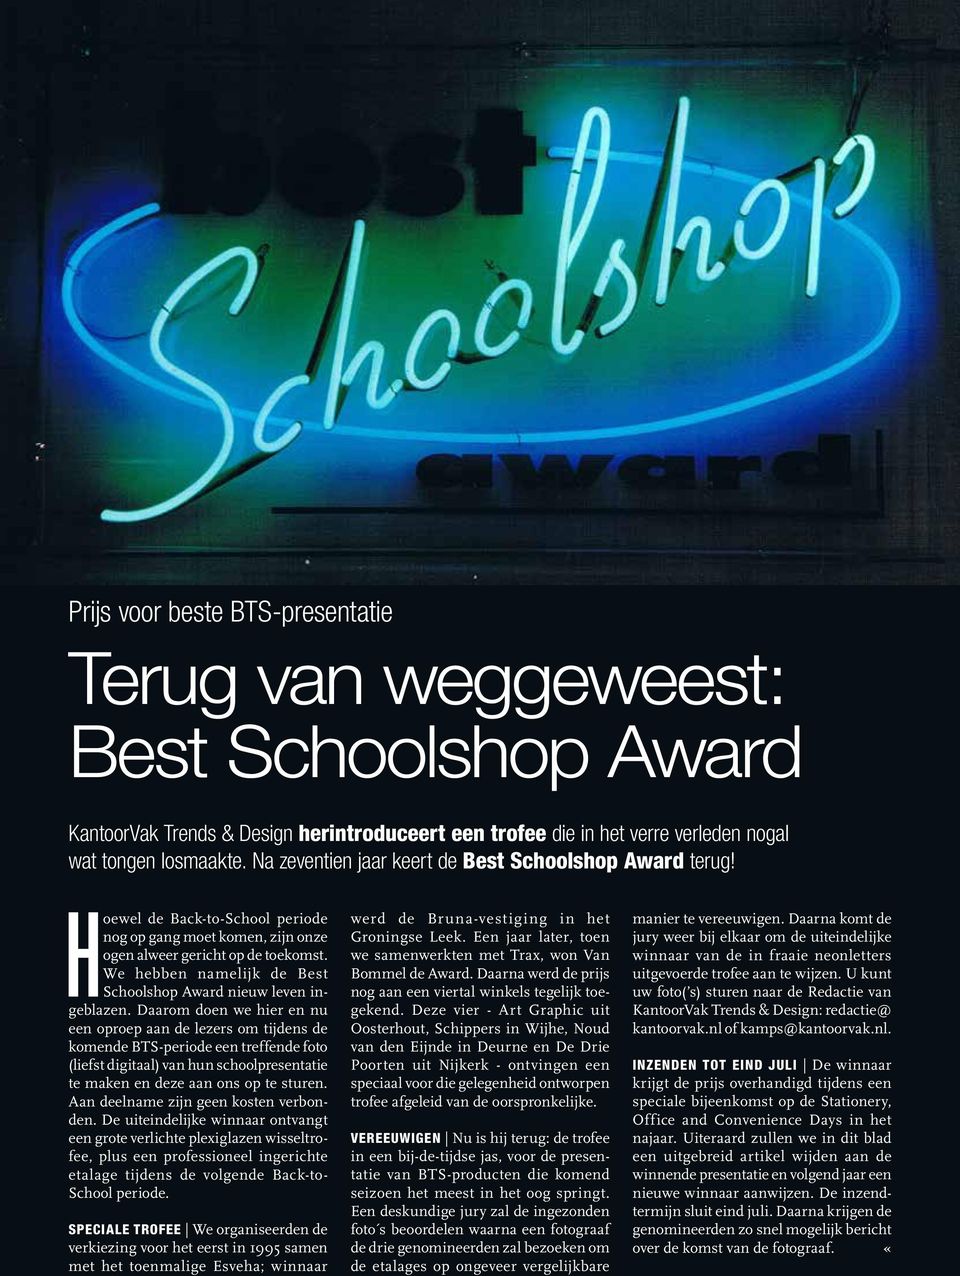 We hebben namelijk de Best Schoolshop Award nieuw leven ingeblazen.